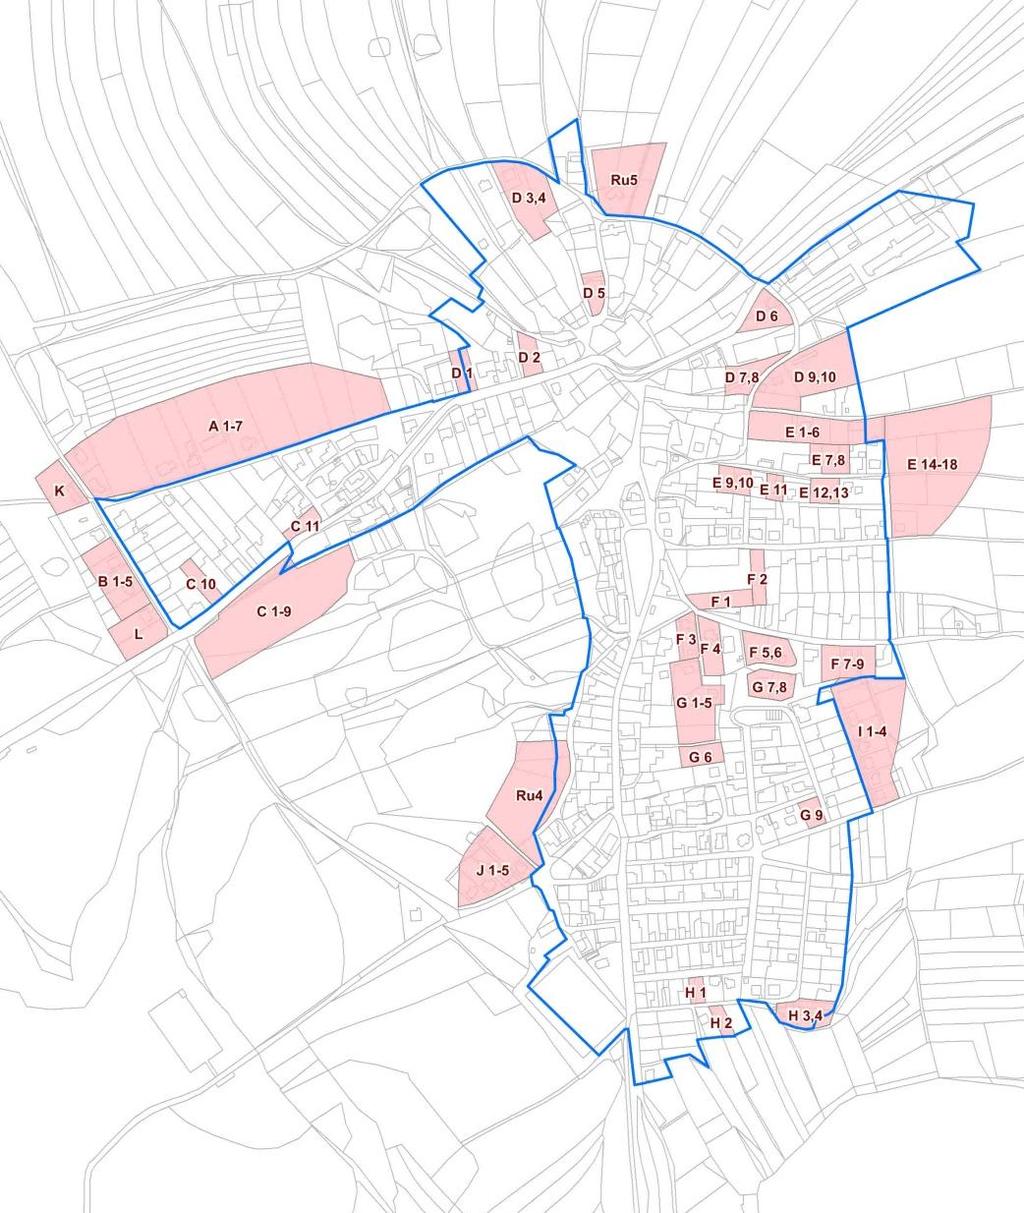 Zastavitelné plochy bydlení dle platného ÚP včetně pozdějších změn - schéma Pozn.: Růžovou plochou jsou vymezeny jednotlivé zastavitelné plochy, modře zastavěné území. II.